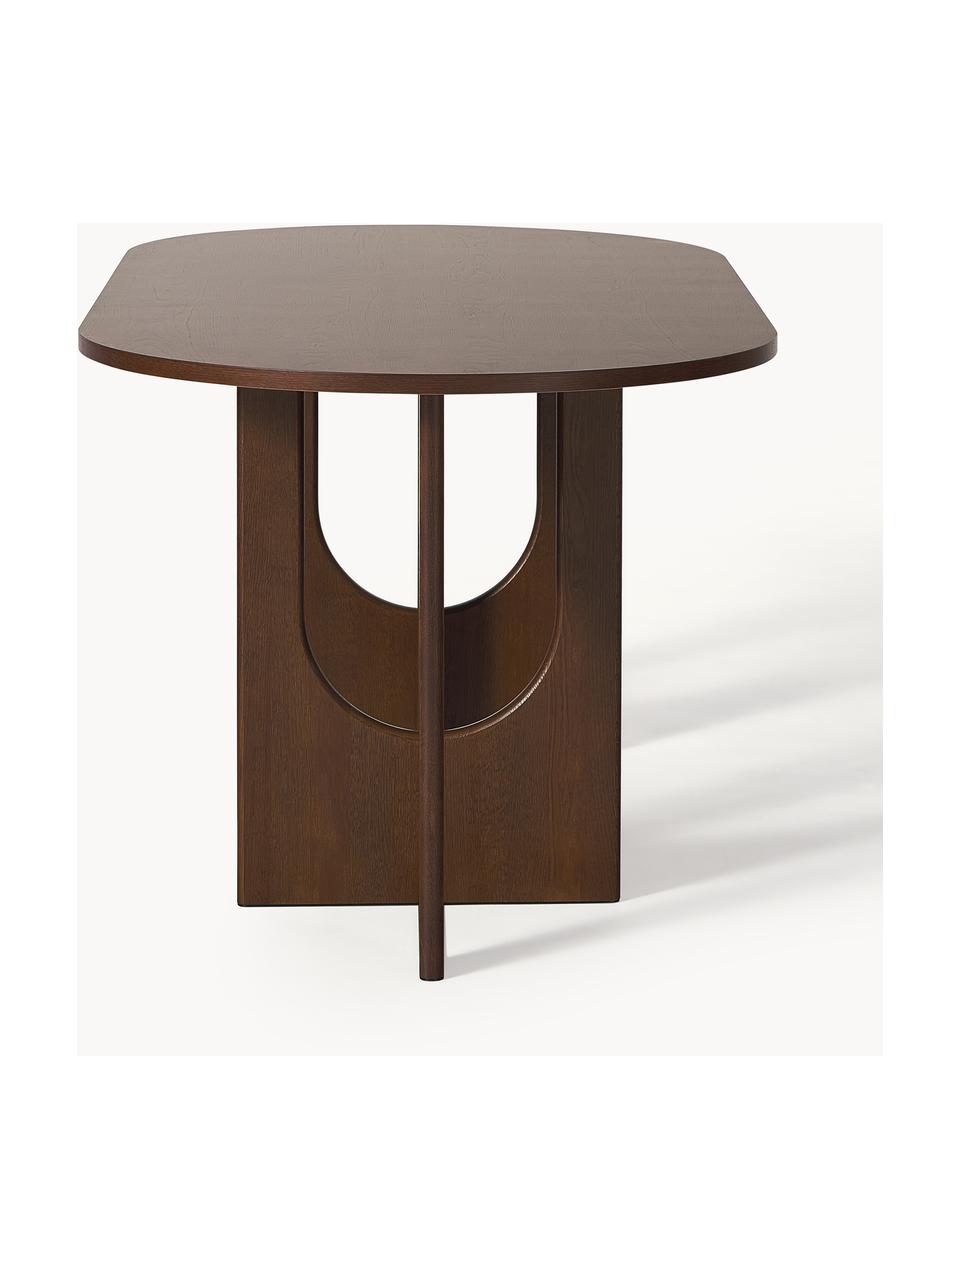 Ovaler Esstisch Apollo, in verschiedenen Größen, Tischplatte: Eichenholzfurnier, lackie, Beine: Eichenholz, lackiert, Met, Eichenholz, dunkelbraun lackiert, B 200 x T 90 cm